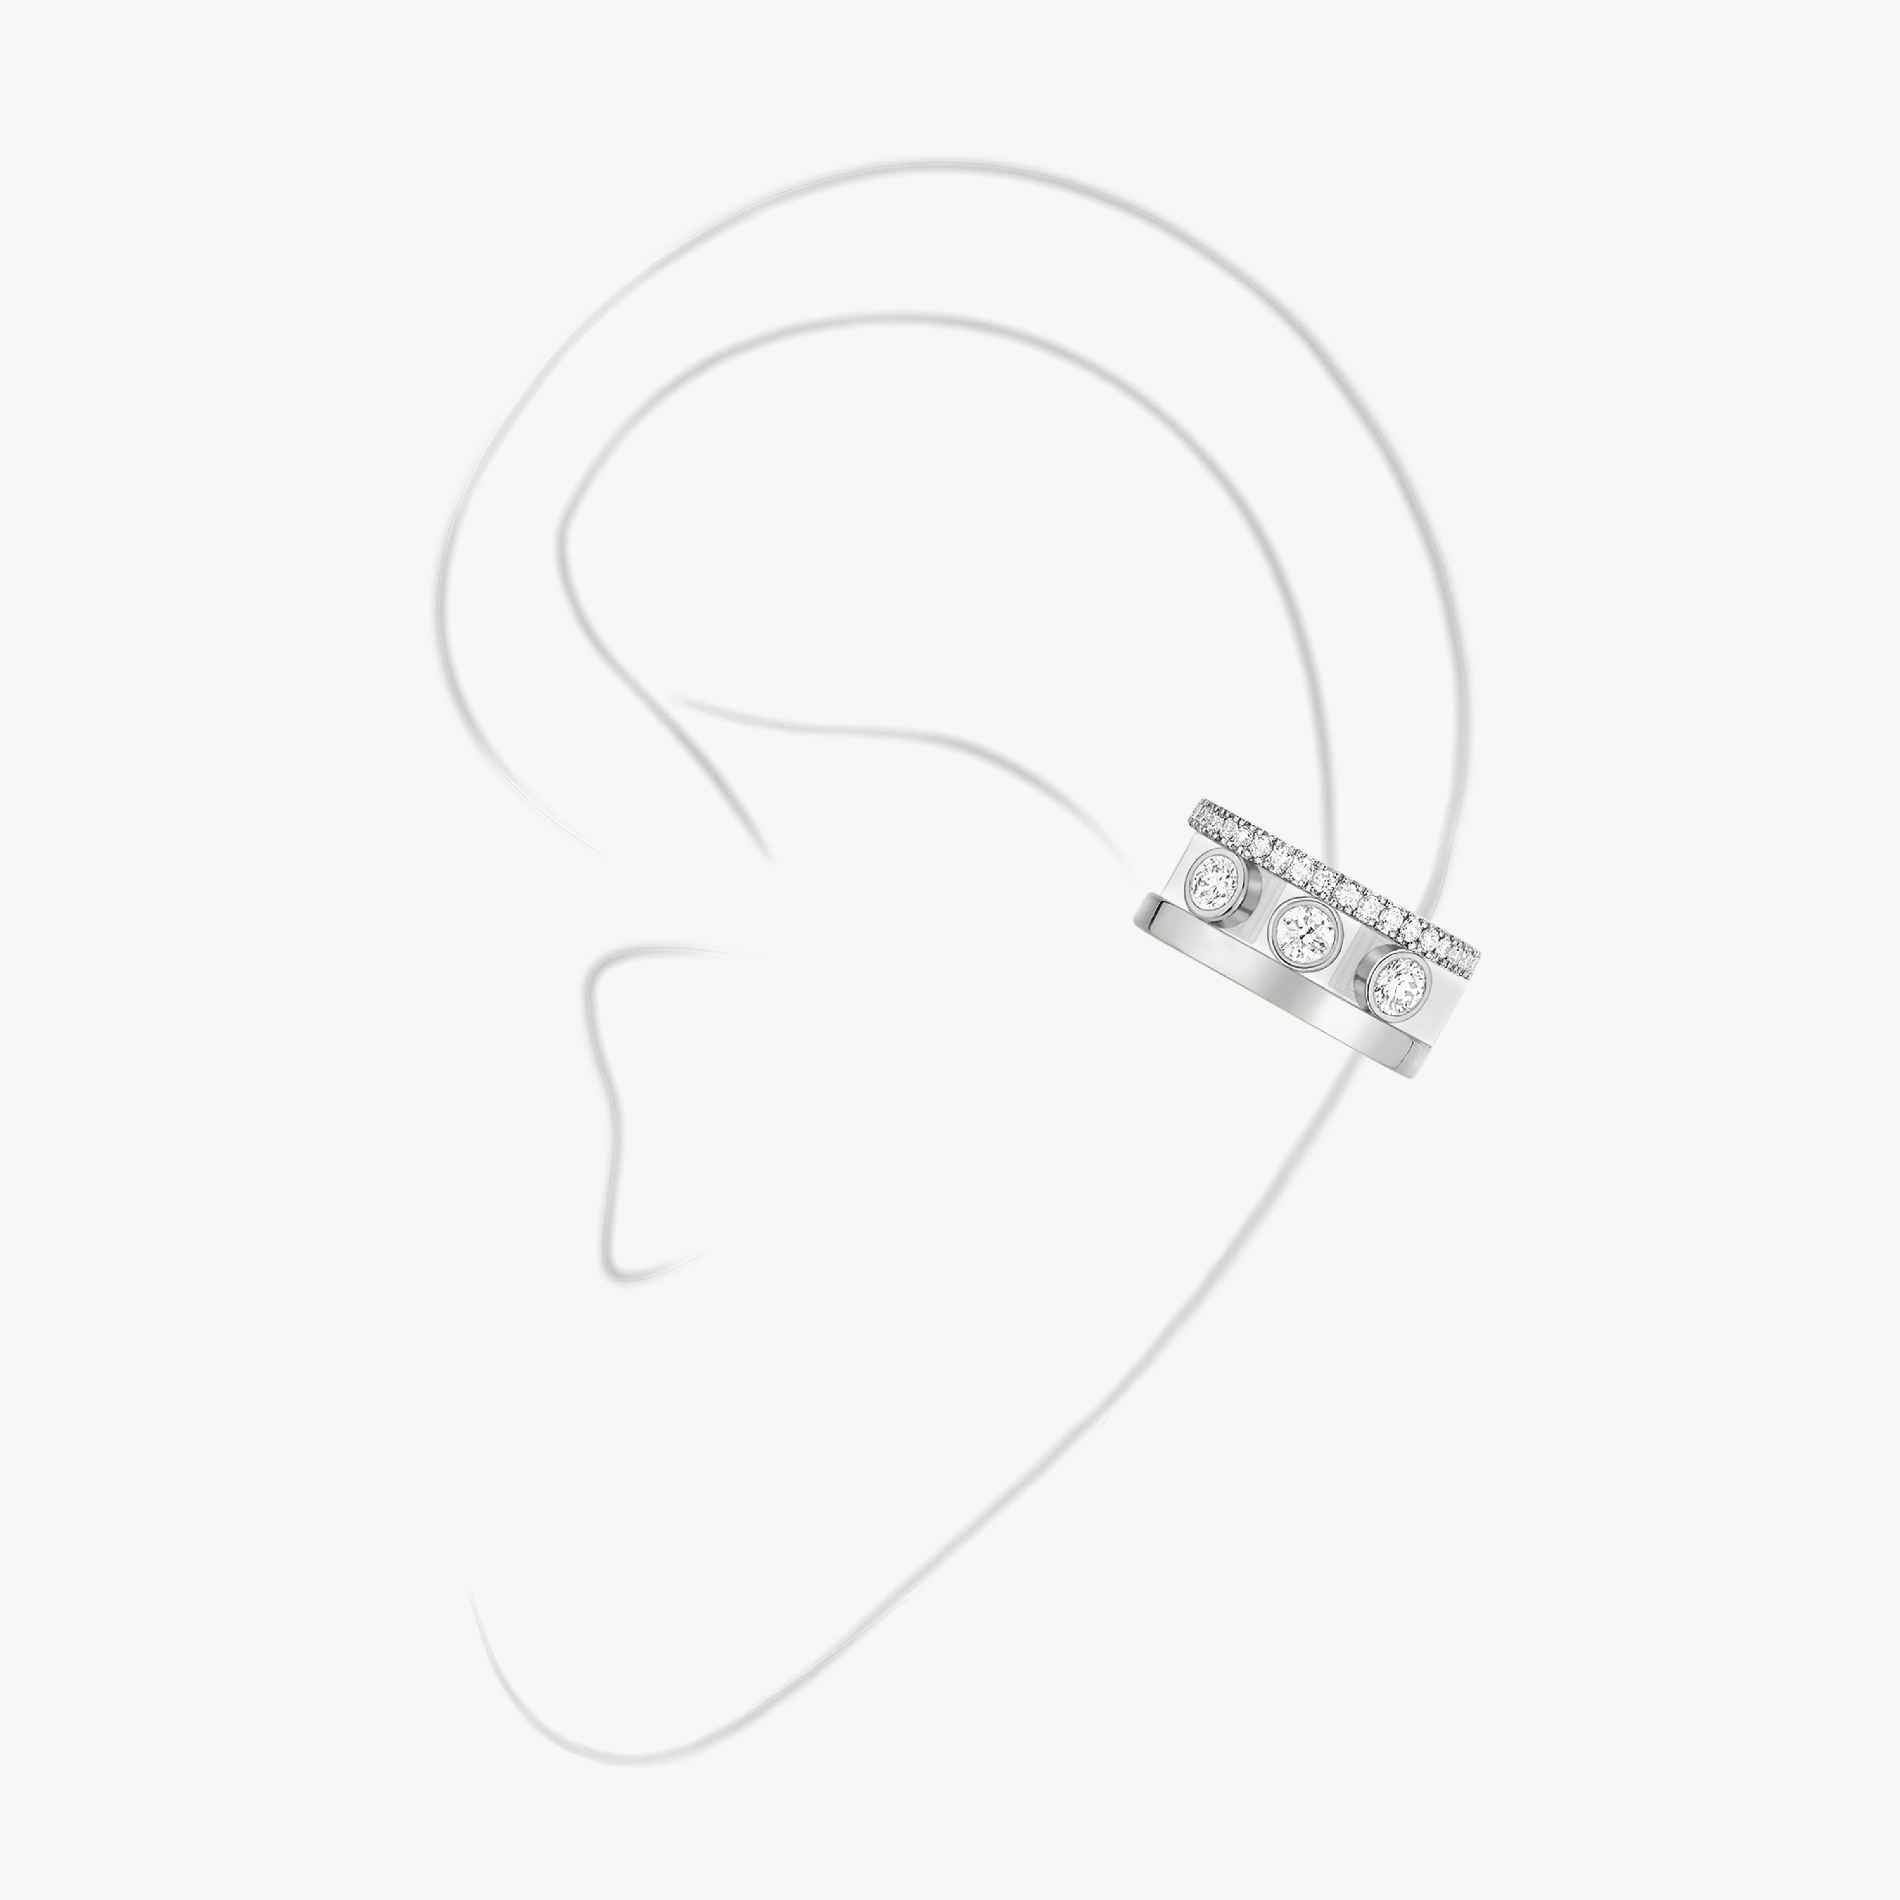 Boucles d'oreilles Femme Or Blanc Diamant Clip d'oreille Move Romane 10120-WG